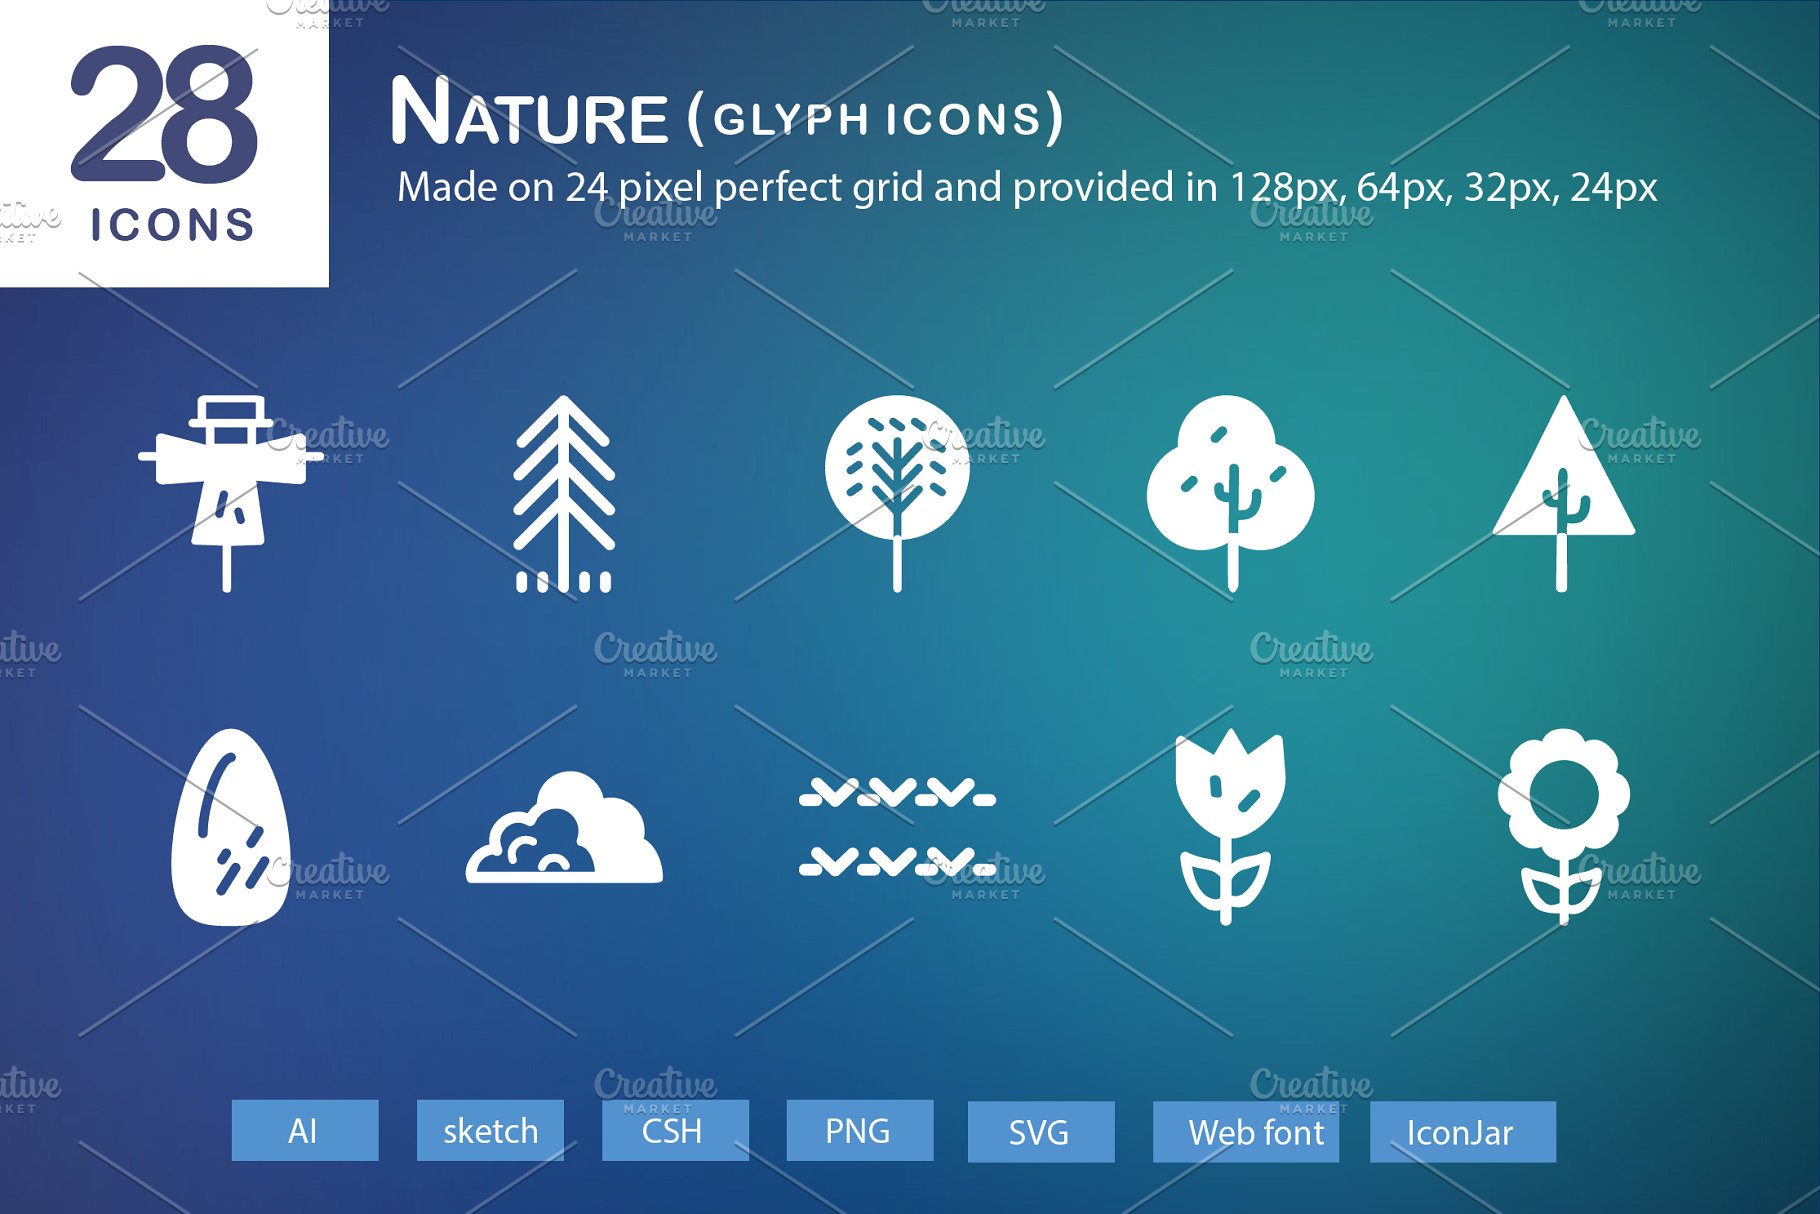 28个大自然元素字体素材库精选图标 28 Nature Glyph Icons插图